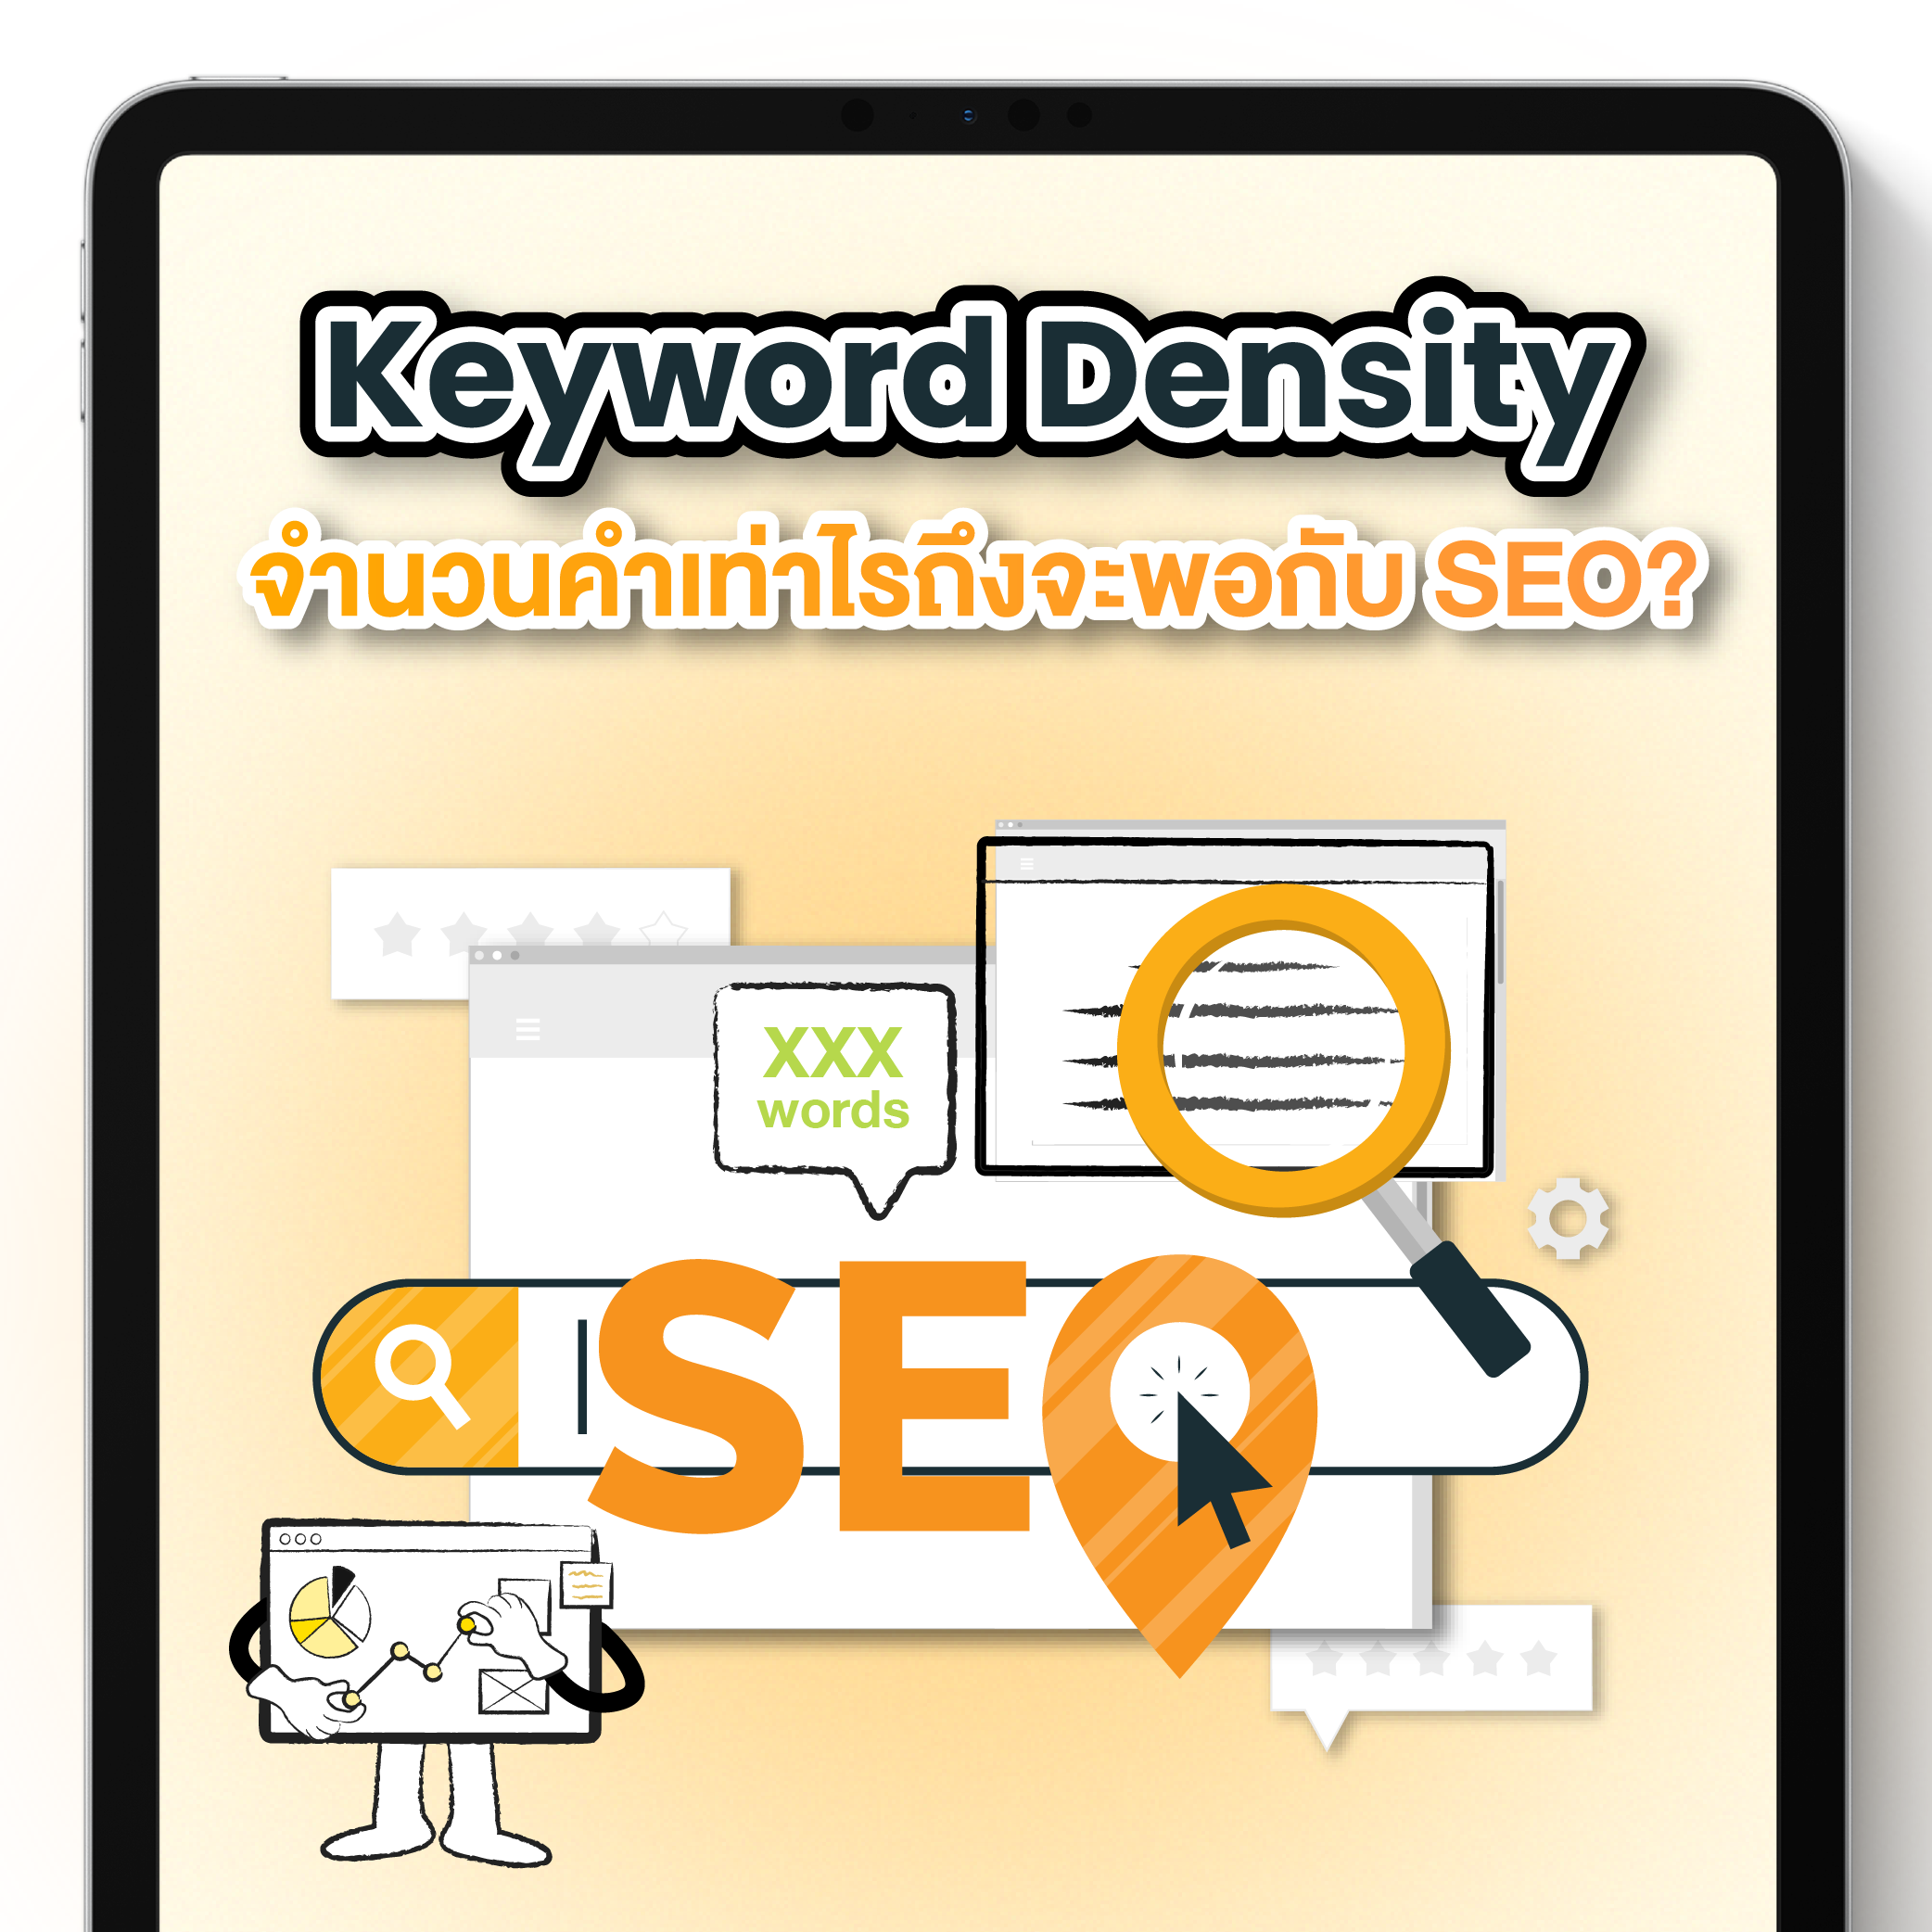 อย่าลืมทำ Keyword Density บนหน้าเว็บไซต์ แต่จำนวนคำเท่าไรถึงจะพอกับ SEO